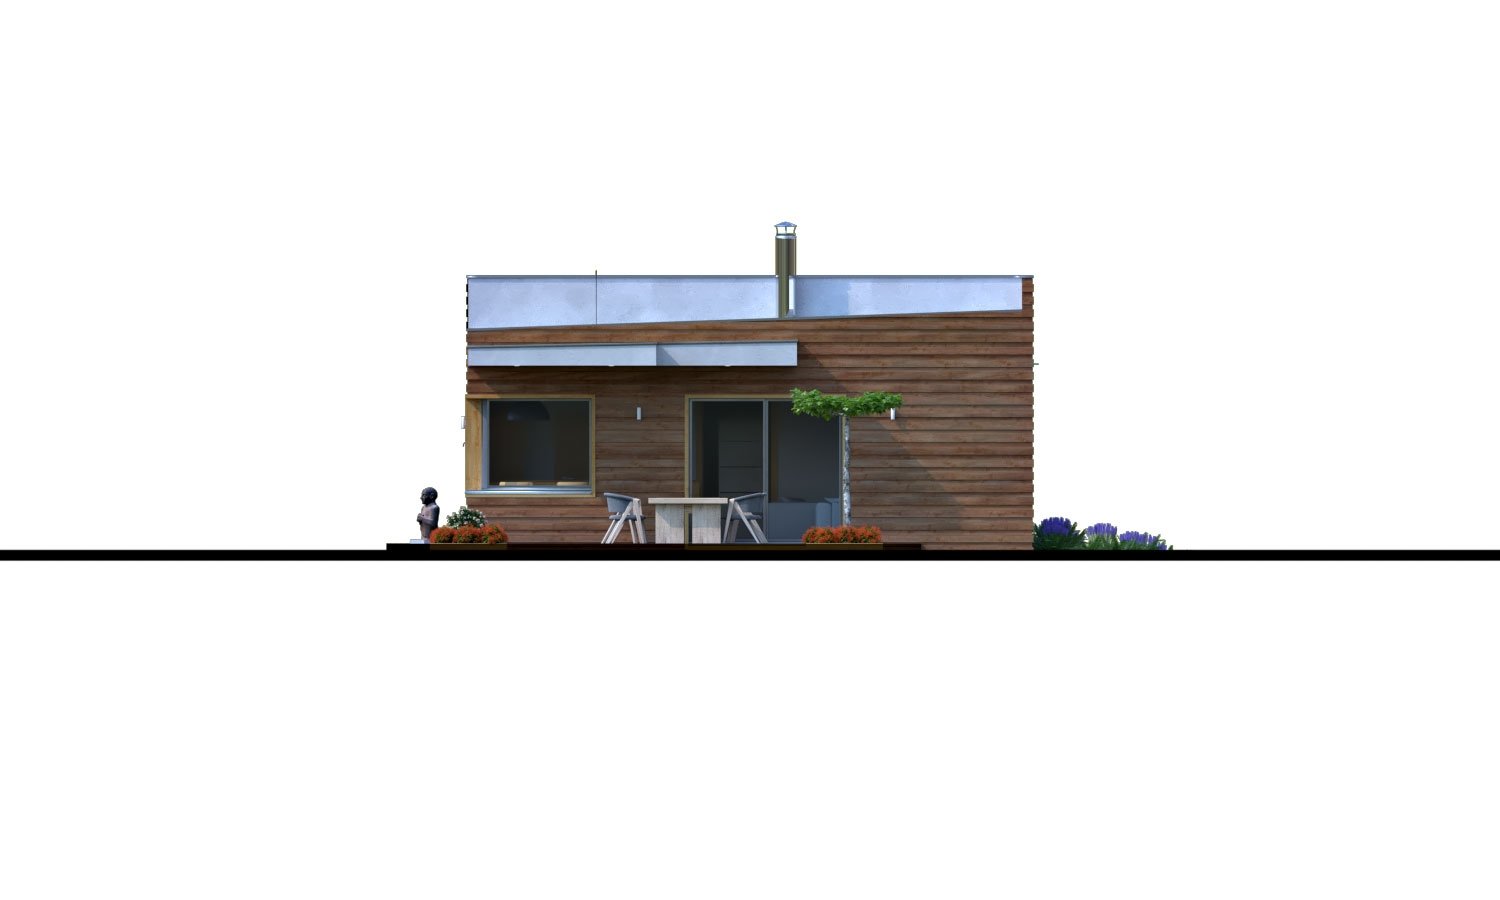 Zrkadlový pohľad 3. - Moderní rodinný dům s přístřeškem pro auto a plochou střechou.